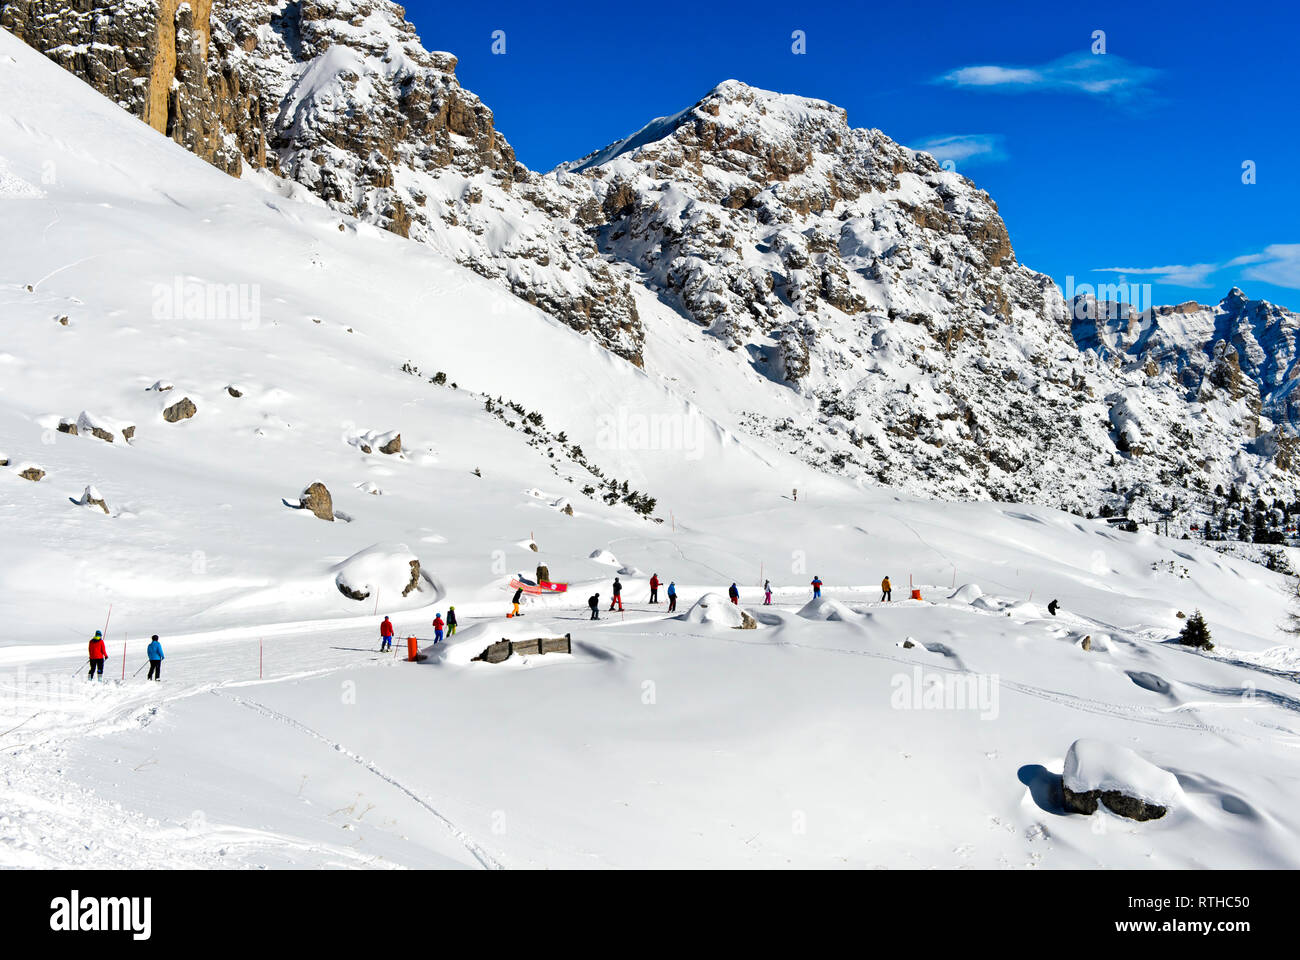 Skiers in the skiing area Colfosco, Alta Badia, Corvara, South Tyrol, Italy Stock Photo